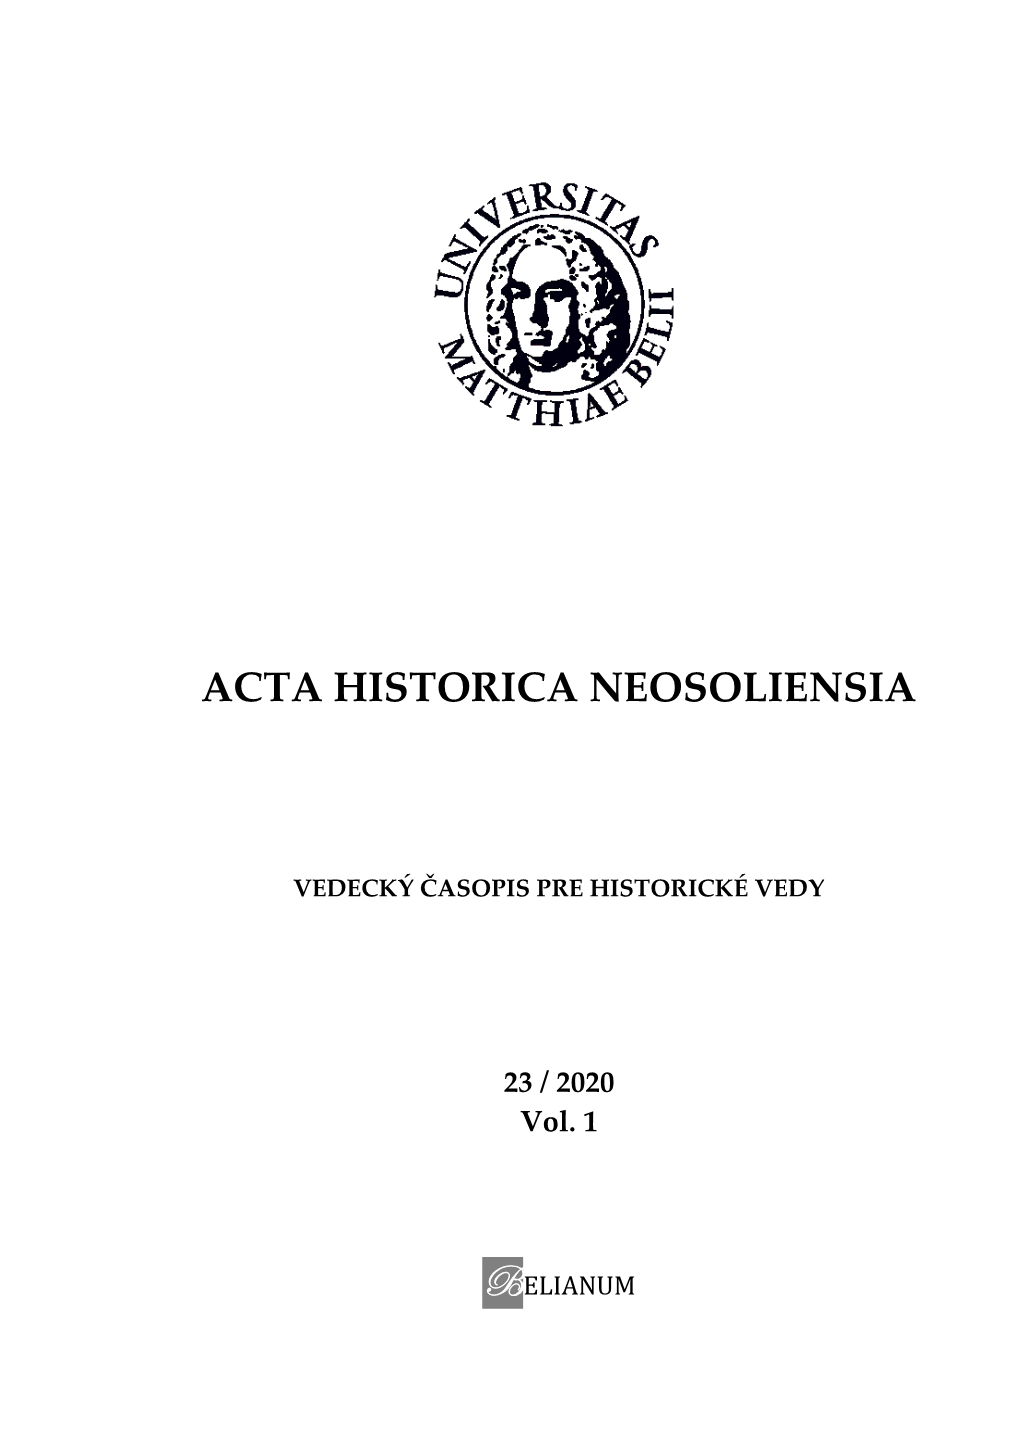 Acta Historica Neosoliensia